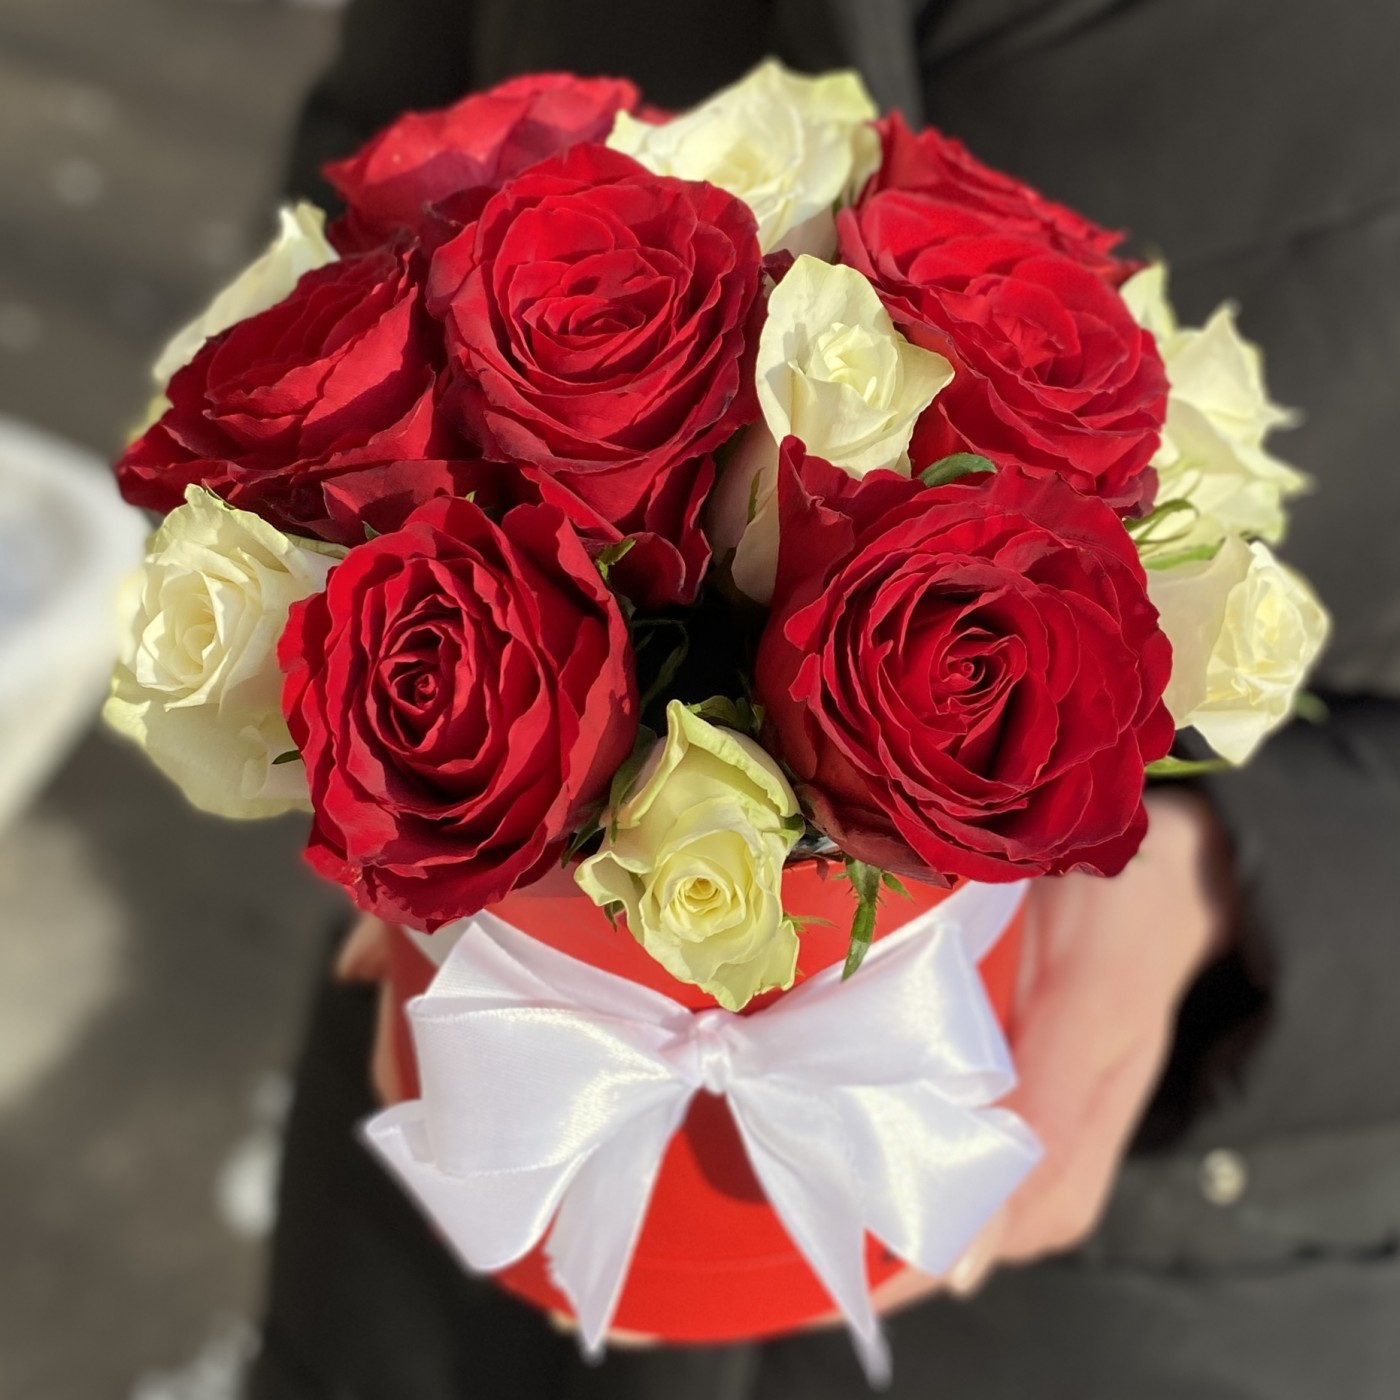 15 красных и белых роз в коробке